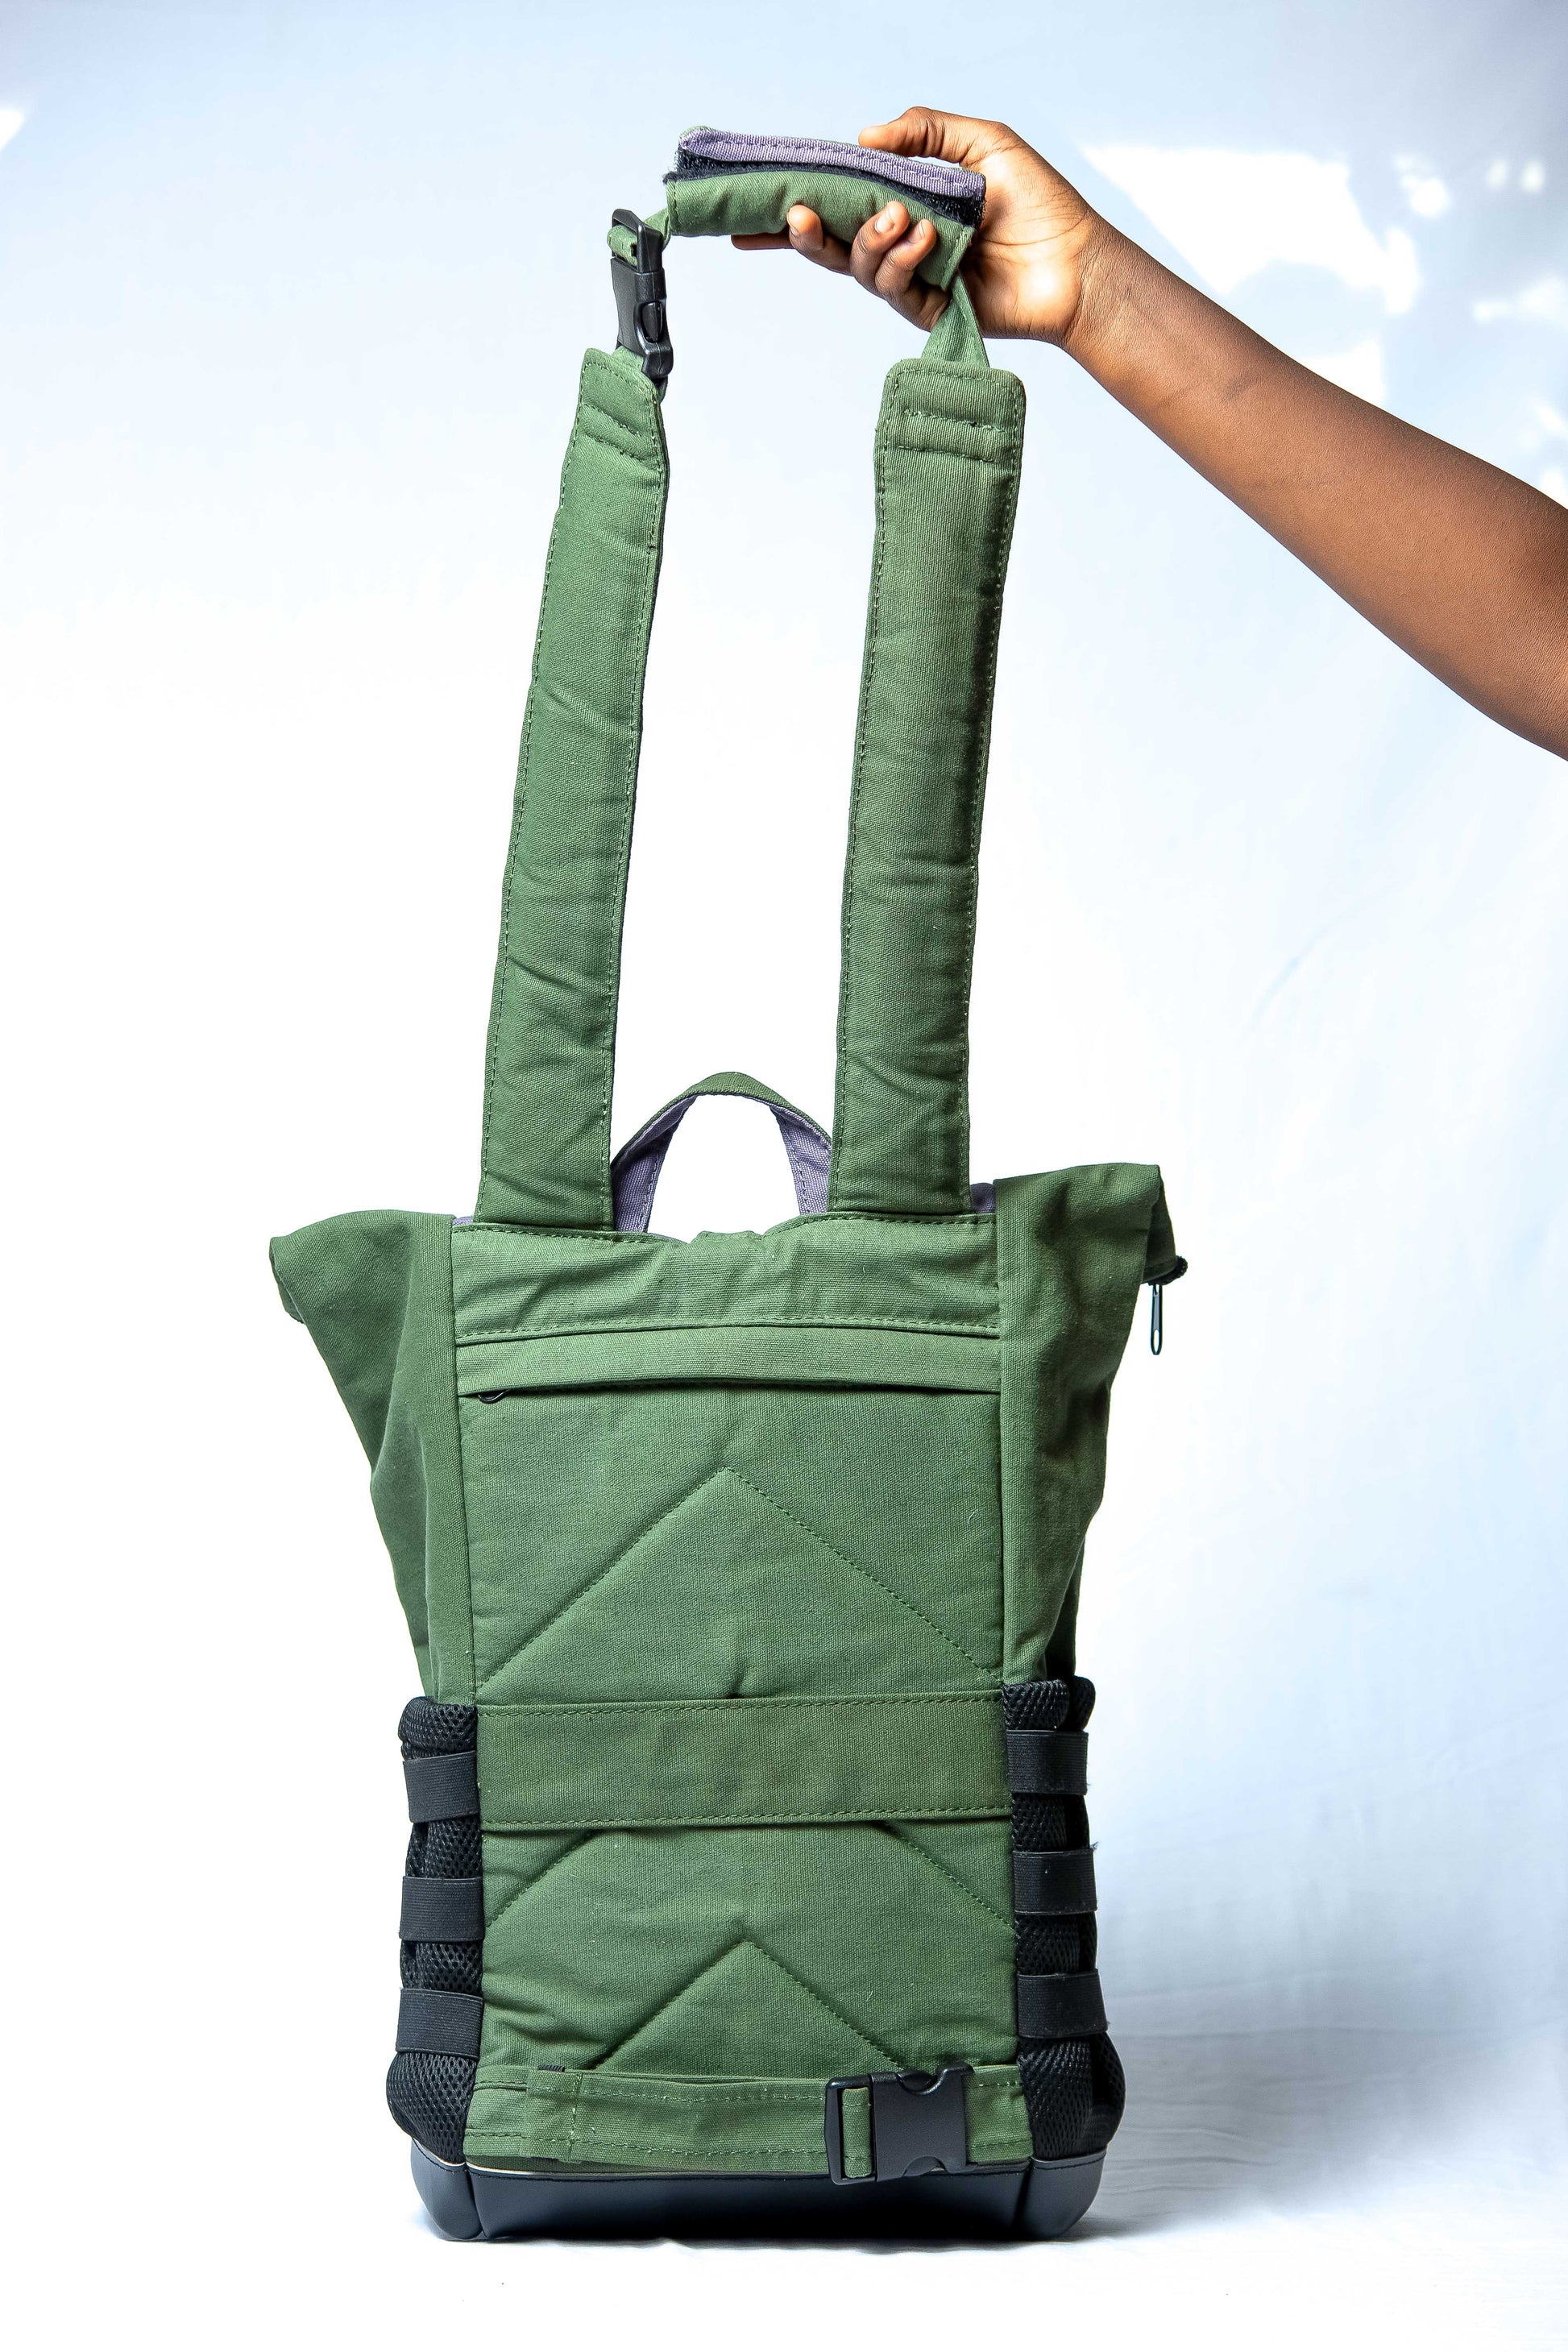 Rucksack Zetu in Farbe Grün und Blau. in Handarbeit hergestellt. Vertrieb durch Manuyoo. 